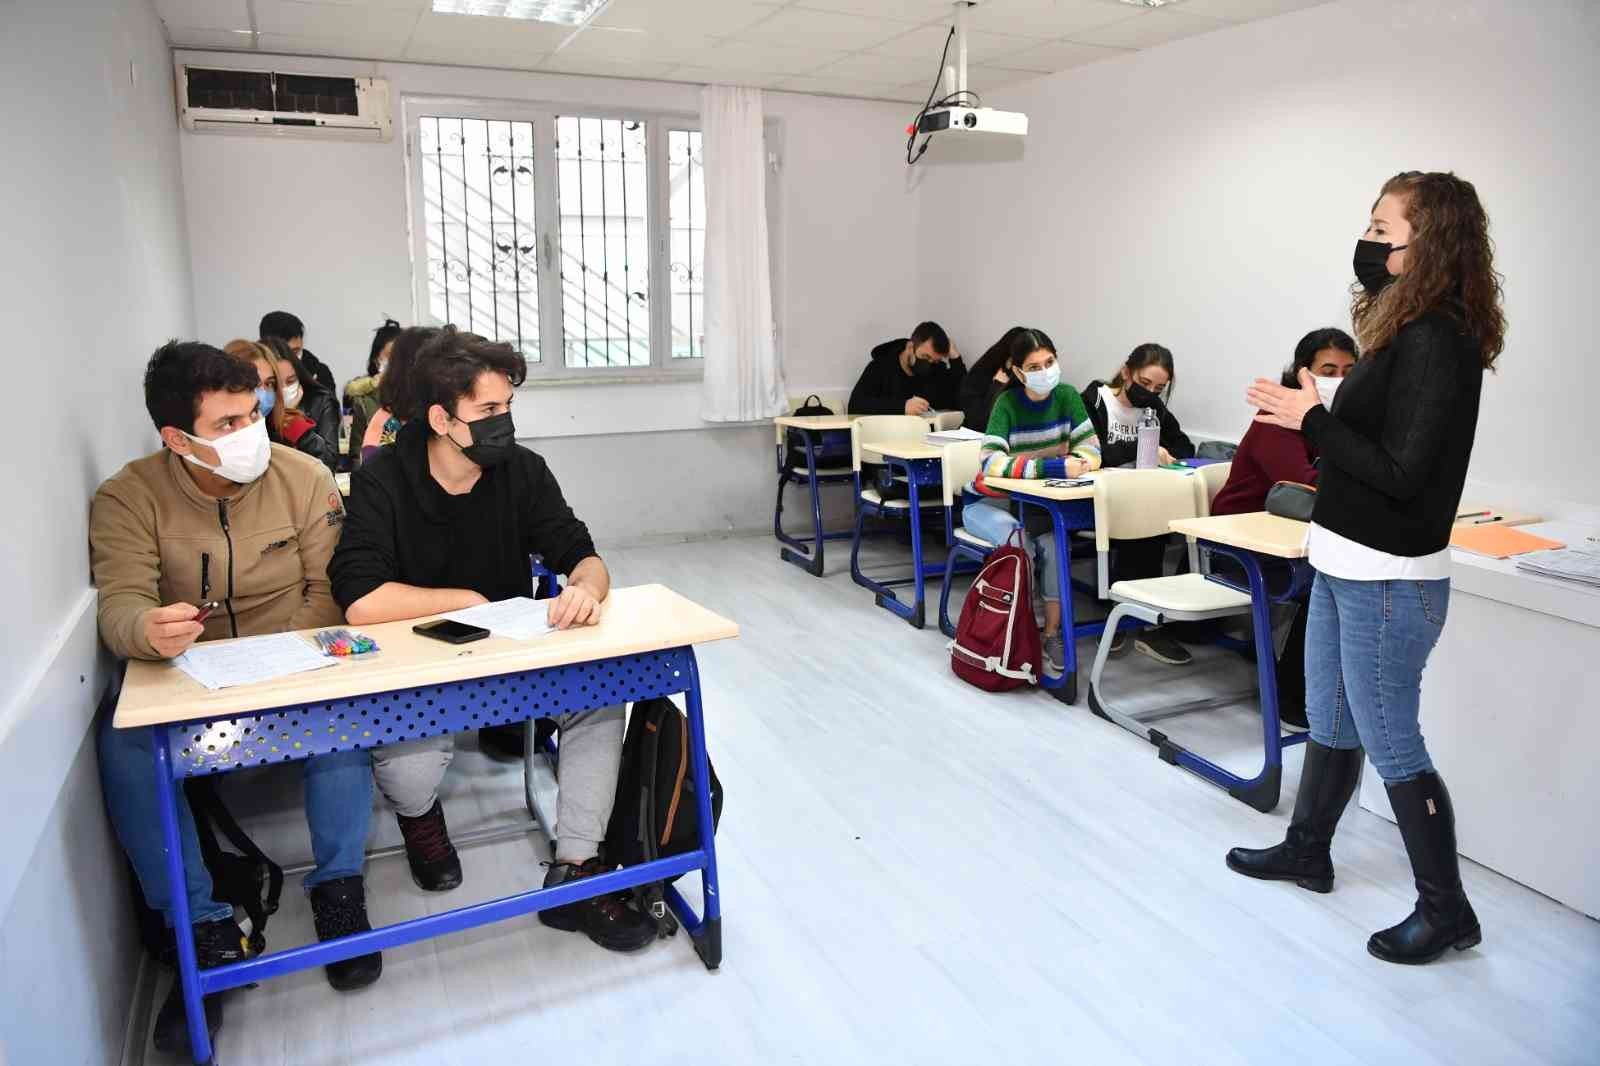 Konyaaltı’nda 300 öğrenciye eğitim desteği #antalya